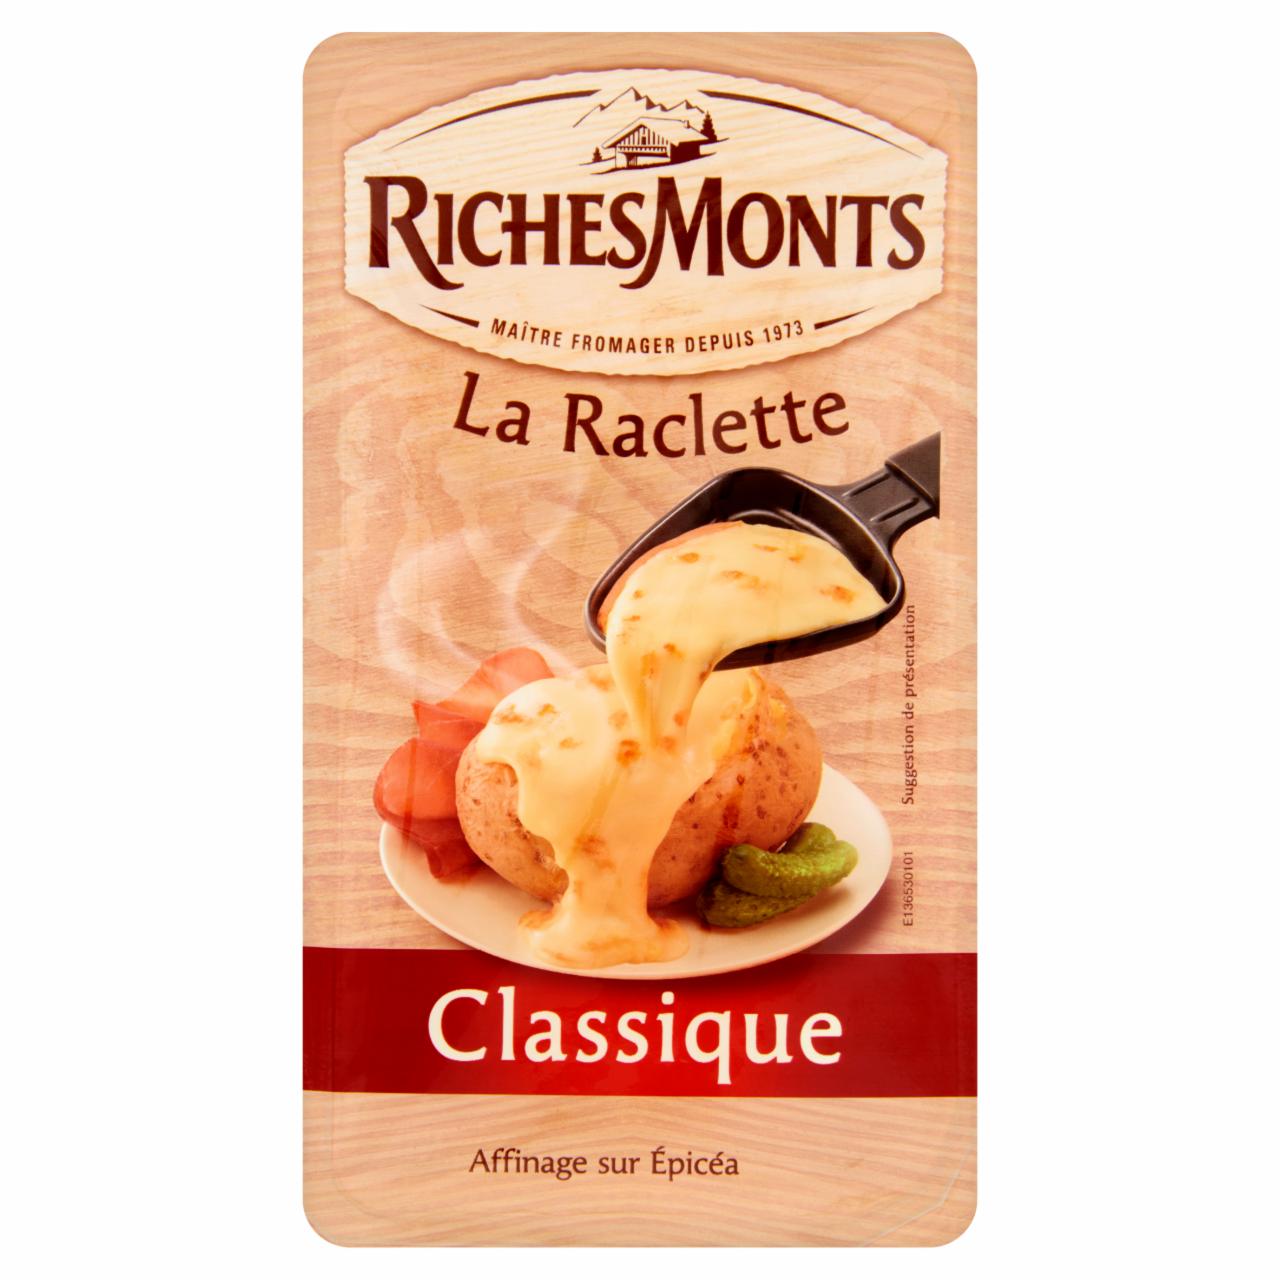 Képek - Riches Monts La Raclette Classique szeletelt, zsíros, félkemény sajt 250 g